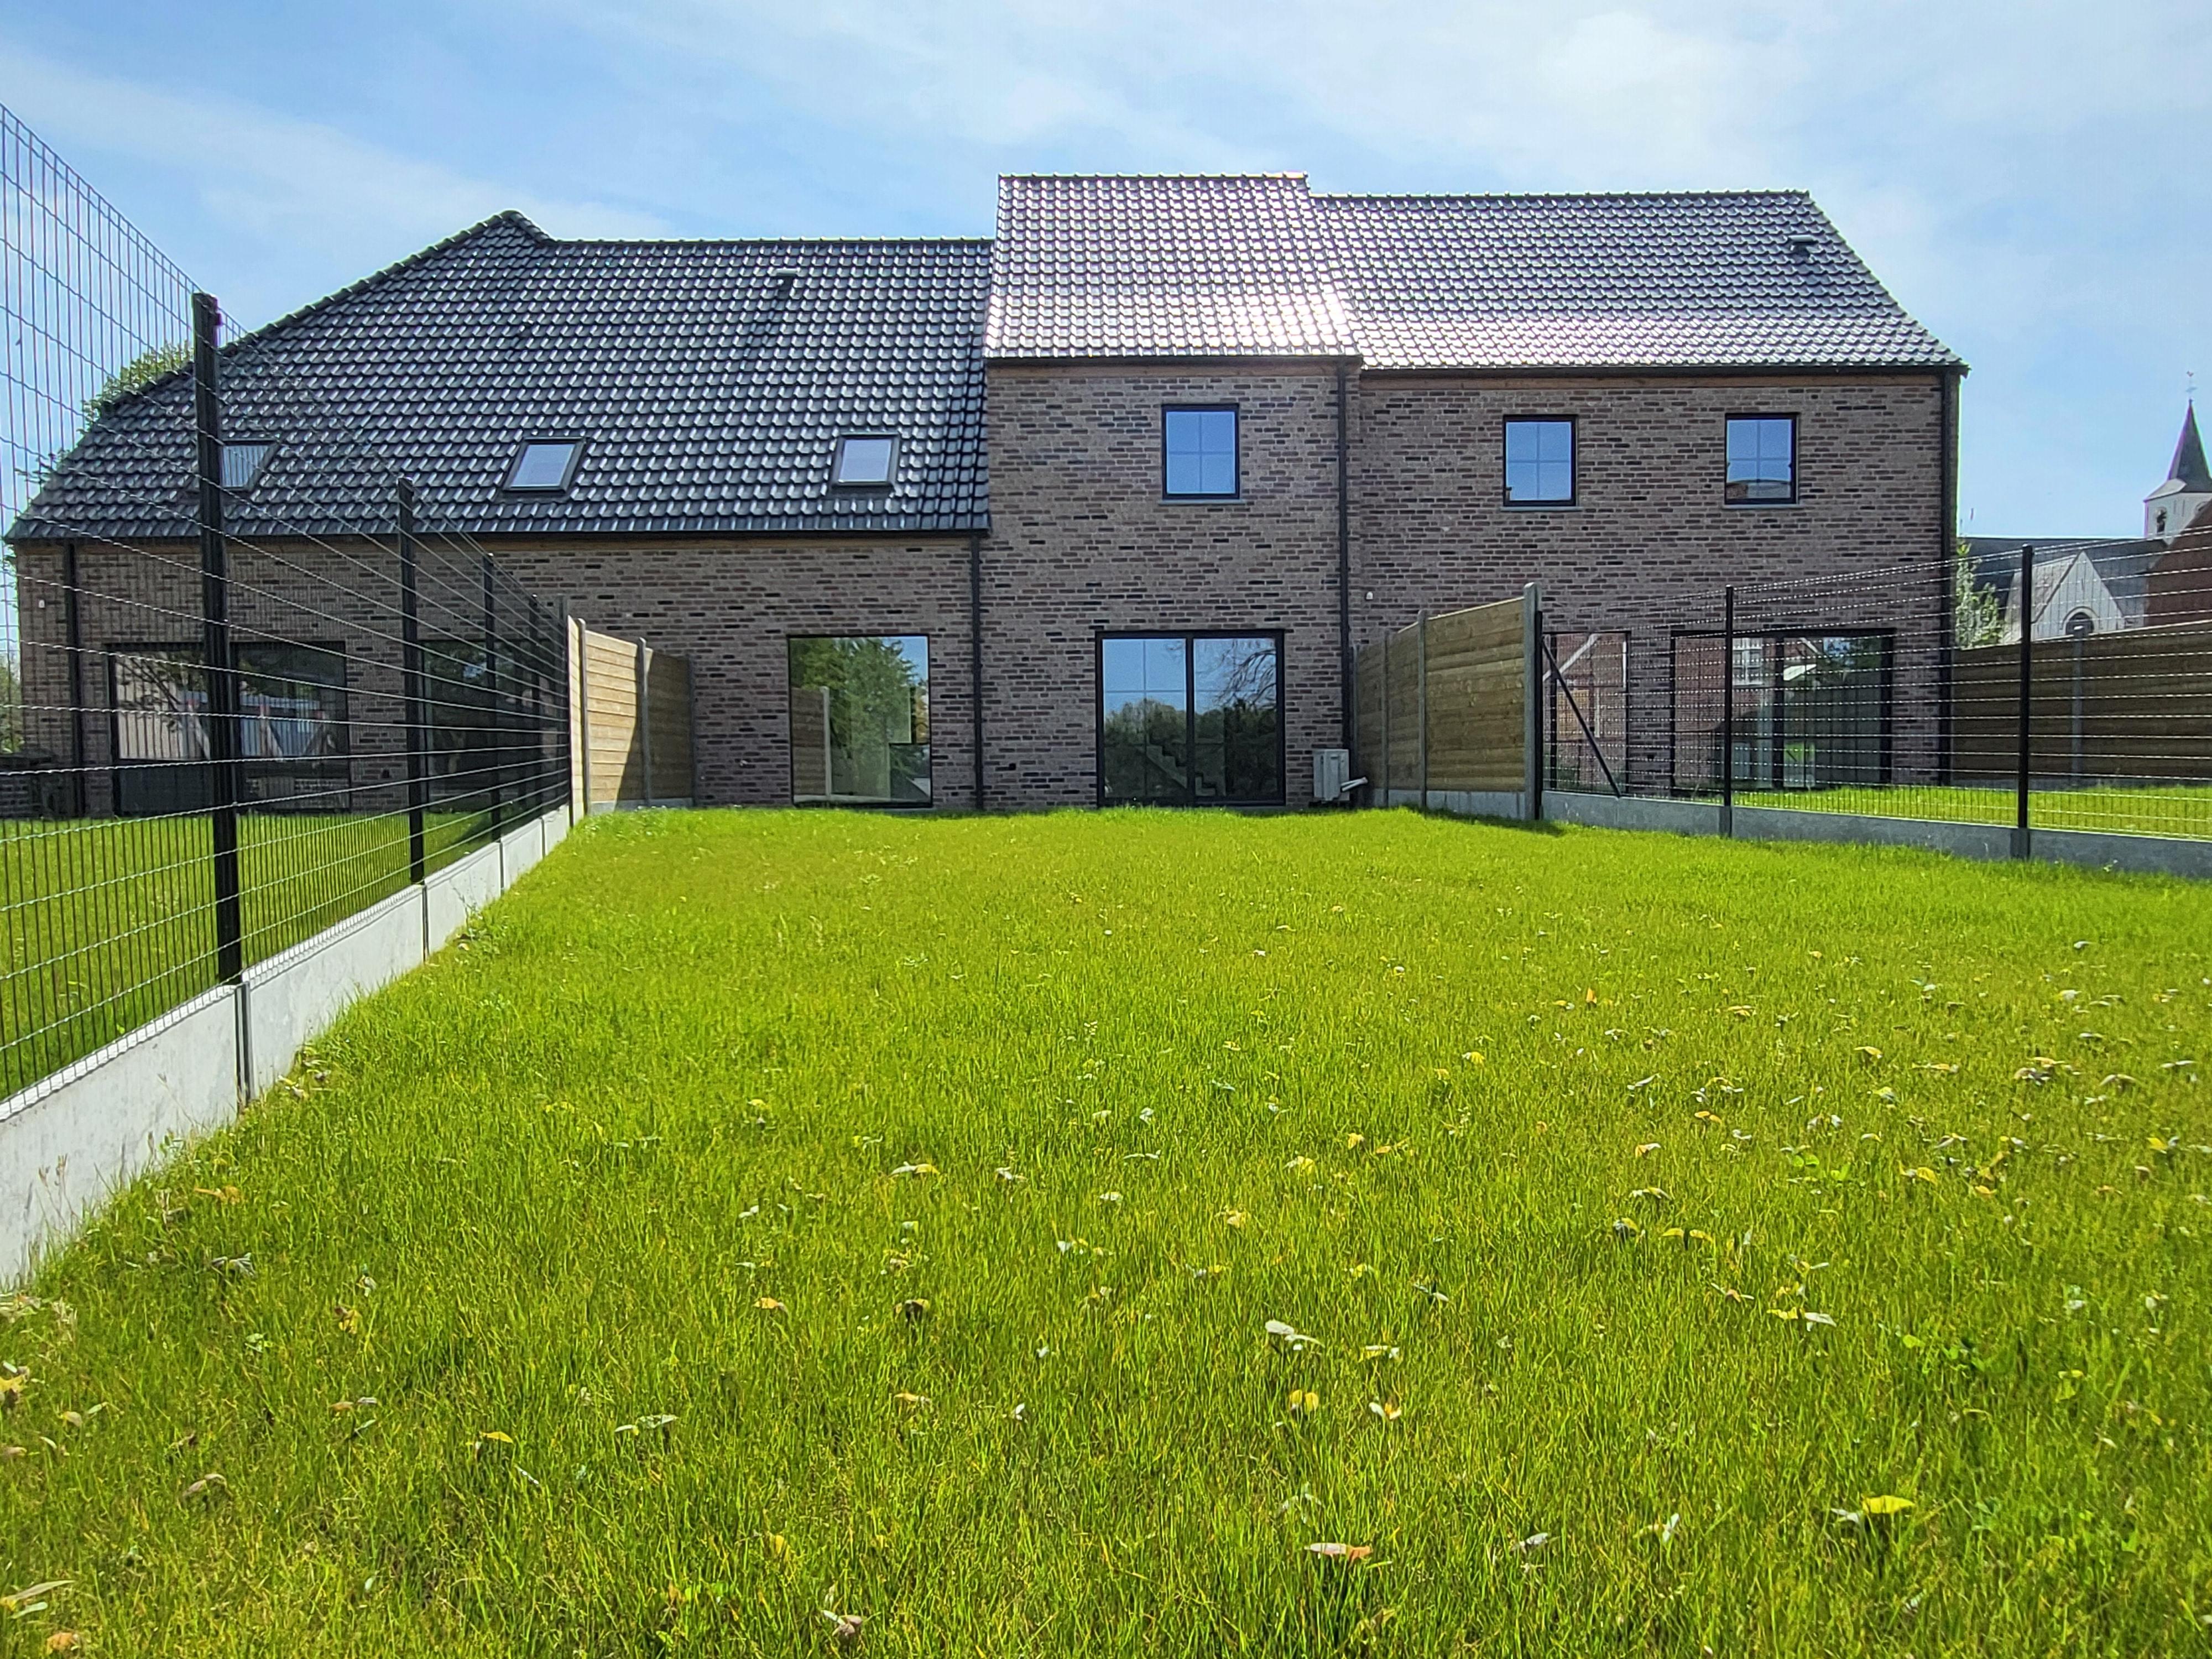  Uiterst energiezuinige BEN nieuwbouw met aangelegde tuin en terras, hartje Vlaamse Ardennen. Aankoop aan 6% btw mogelijk ! foto 6